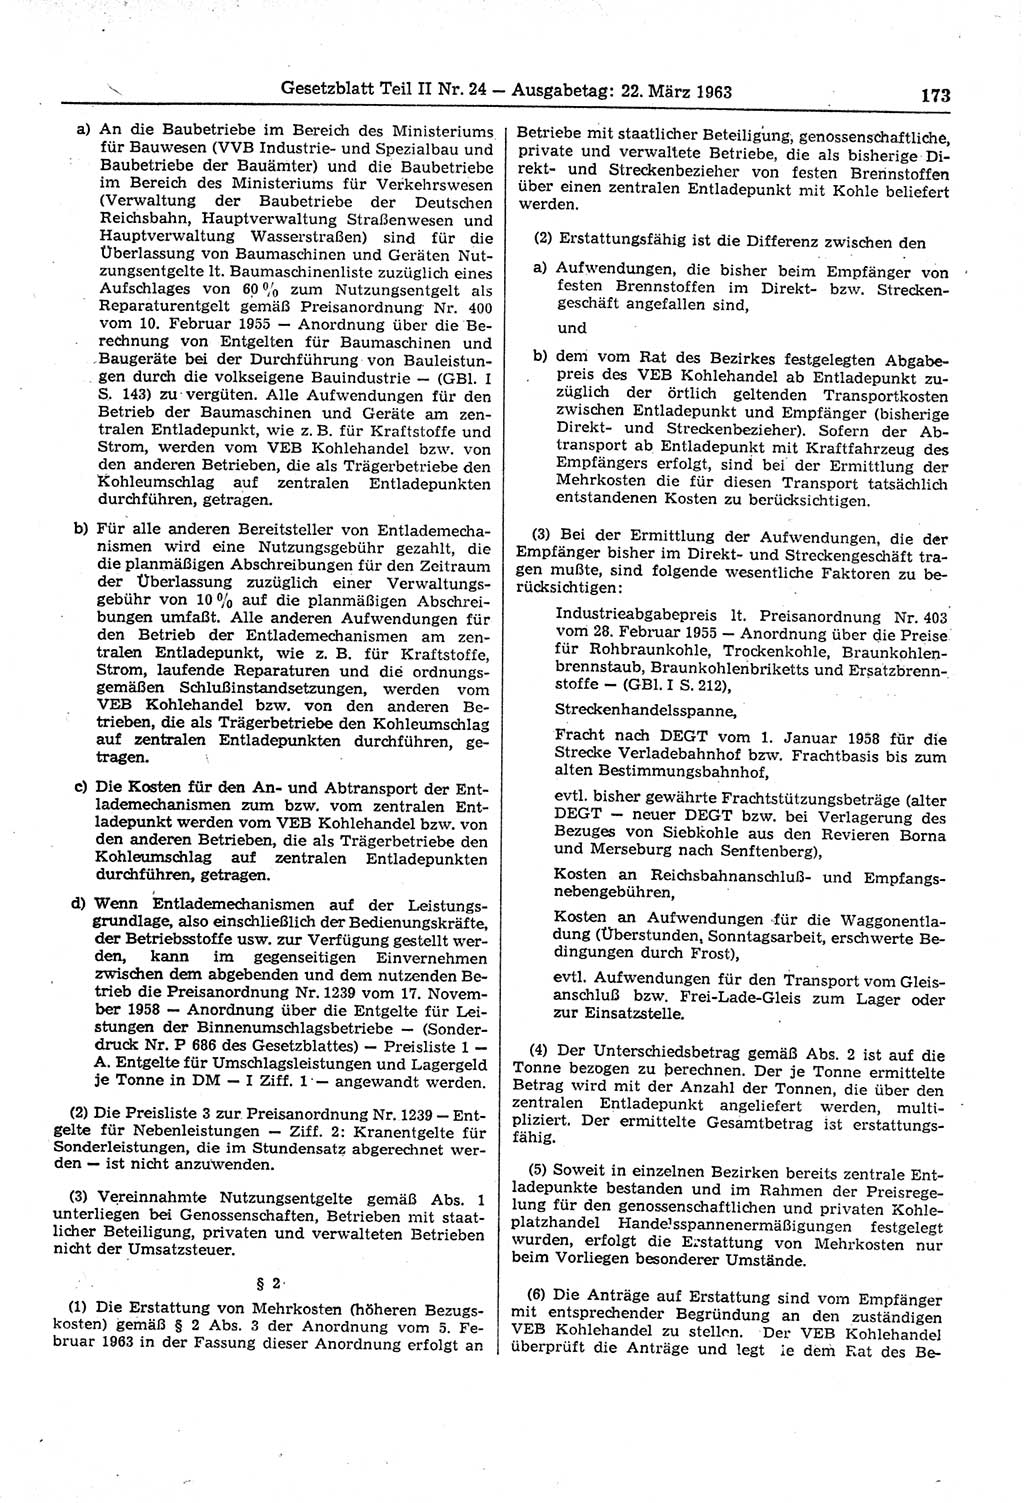 Gesetzblatt (GBl.) der Deutschen Demokratischen Republik (DDR) Teil ⅠⅠ 1963, Seite 173 (GBl. DDR ⅠⅠ 1963, S. 173)